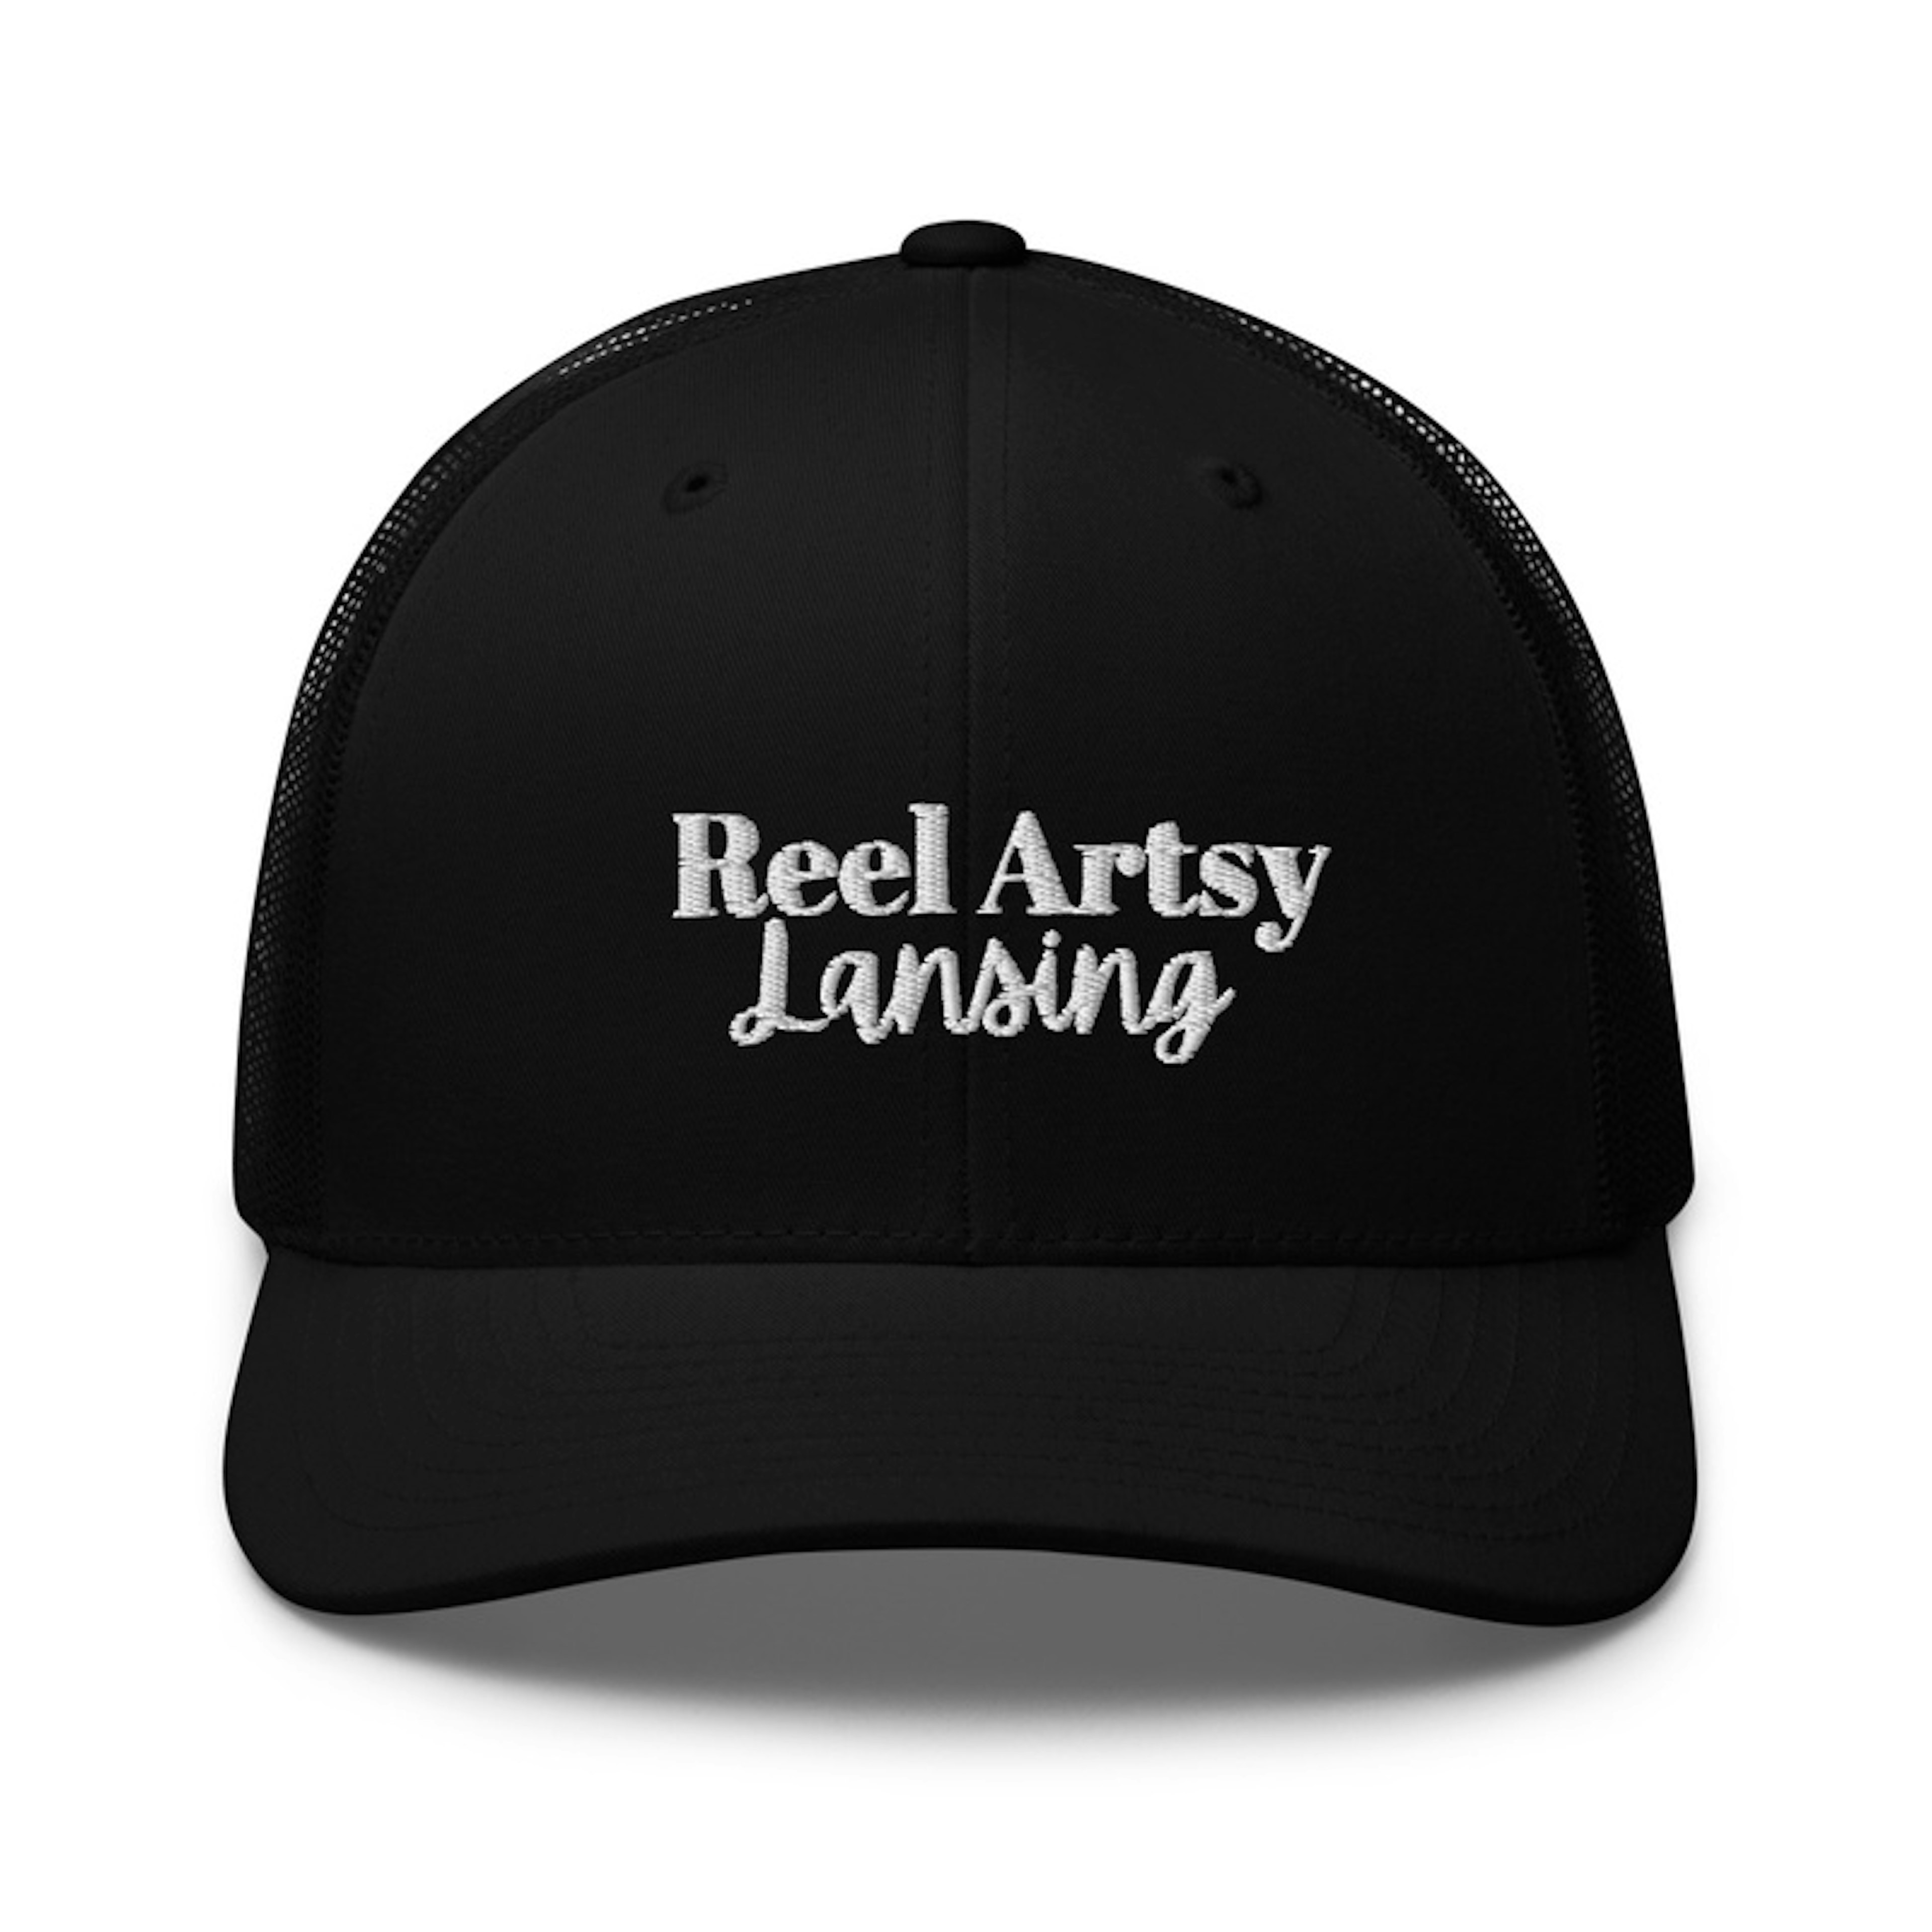 Reel Artsy Lansing Hats